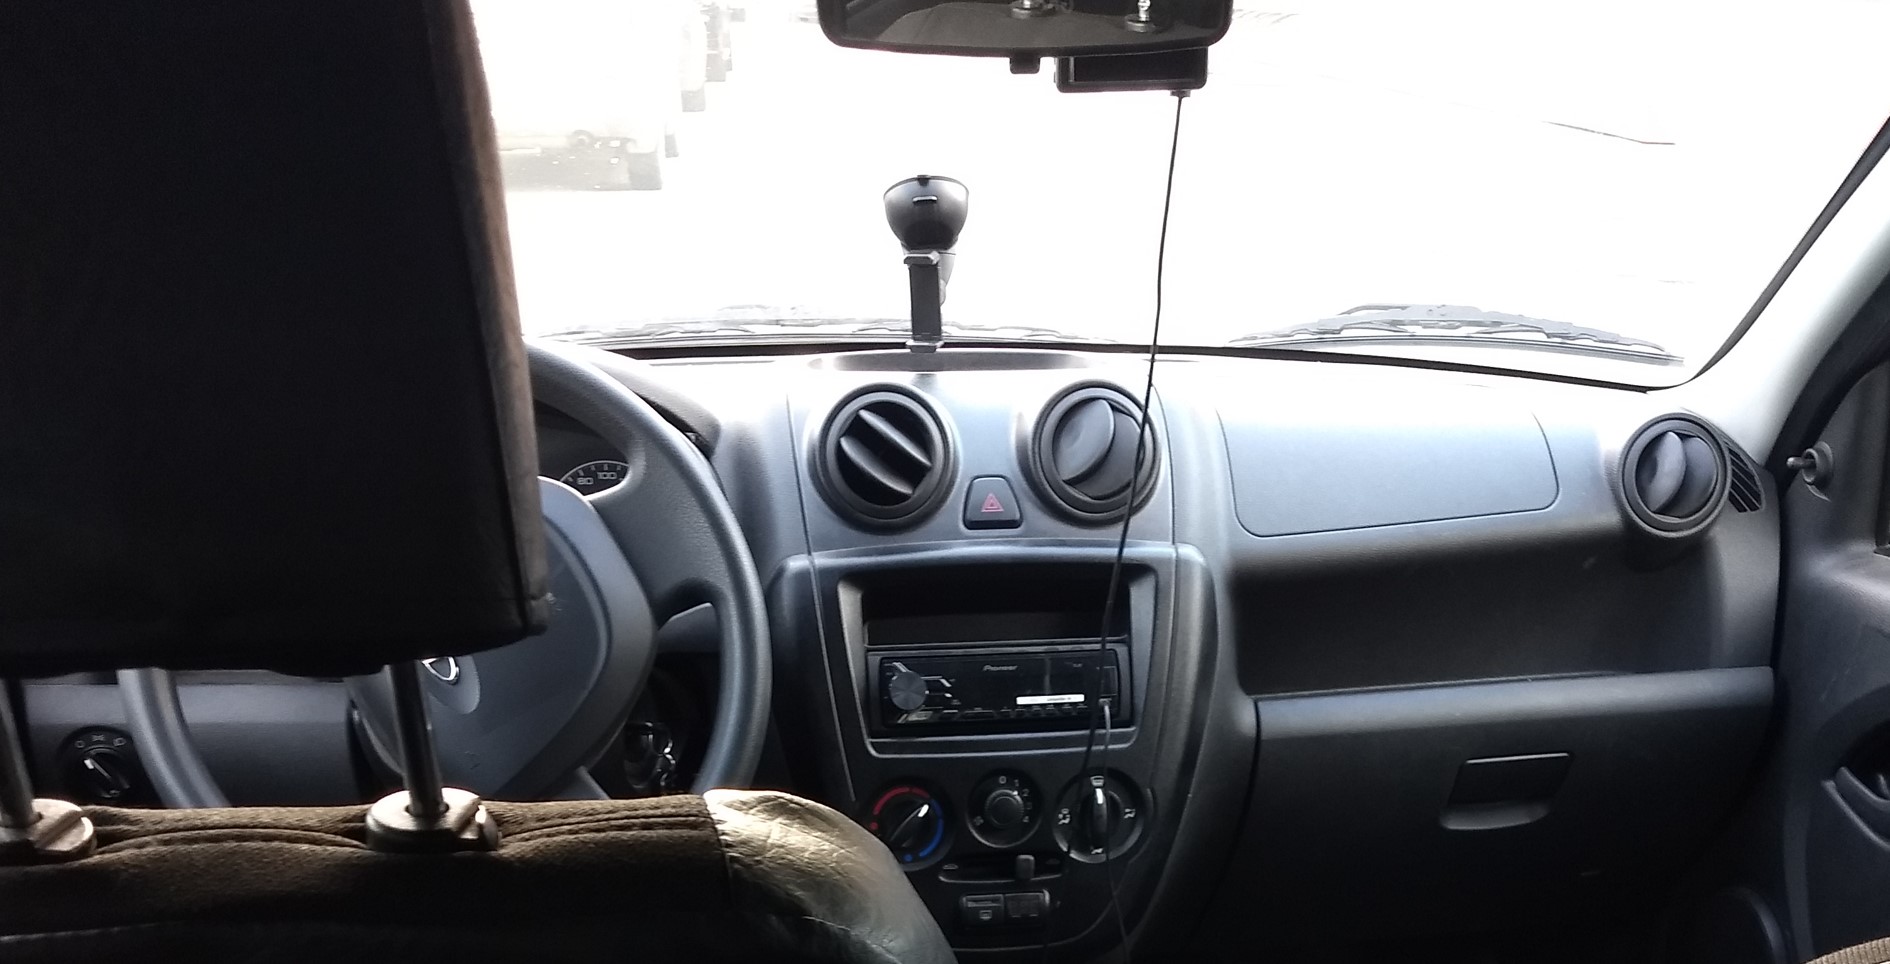 Автоэксперт Васильев посоветовал выключить кондиционер при прогреве автомобиля зимой в РФ